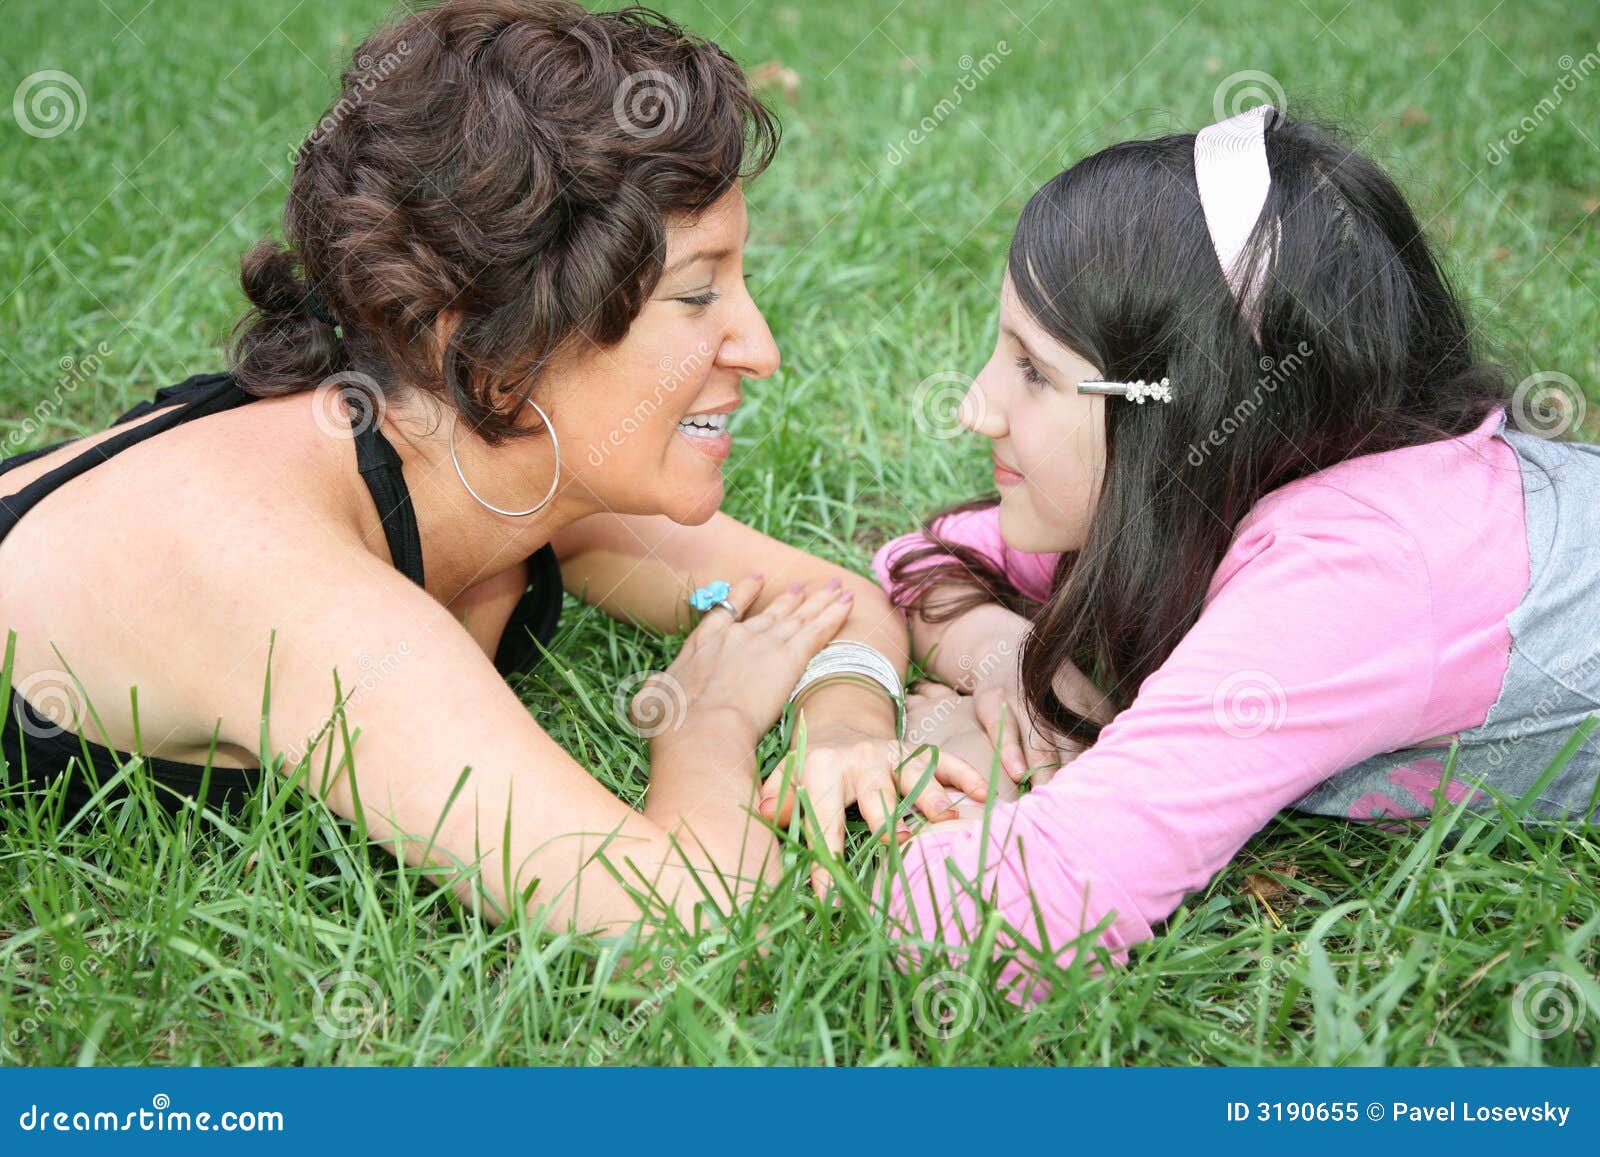 2 мамы лесбиянок. Мать и дочь на траве. Дочка лежит на маме. Мама и дочка лесбиянство. Фотосессия мама и дочь лизбиянка.